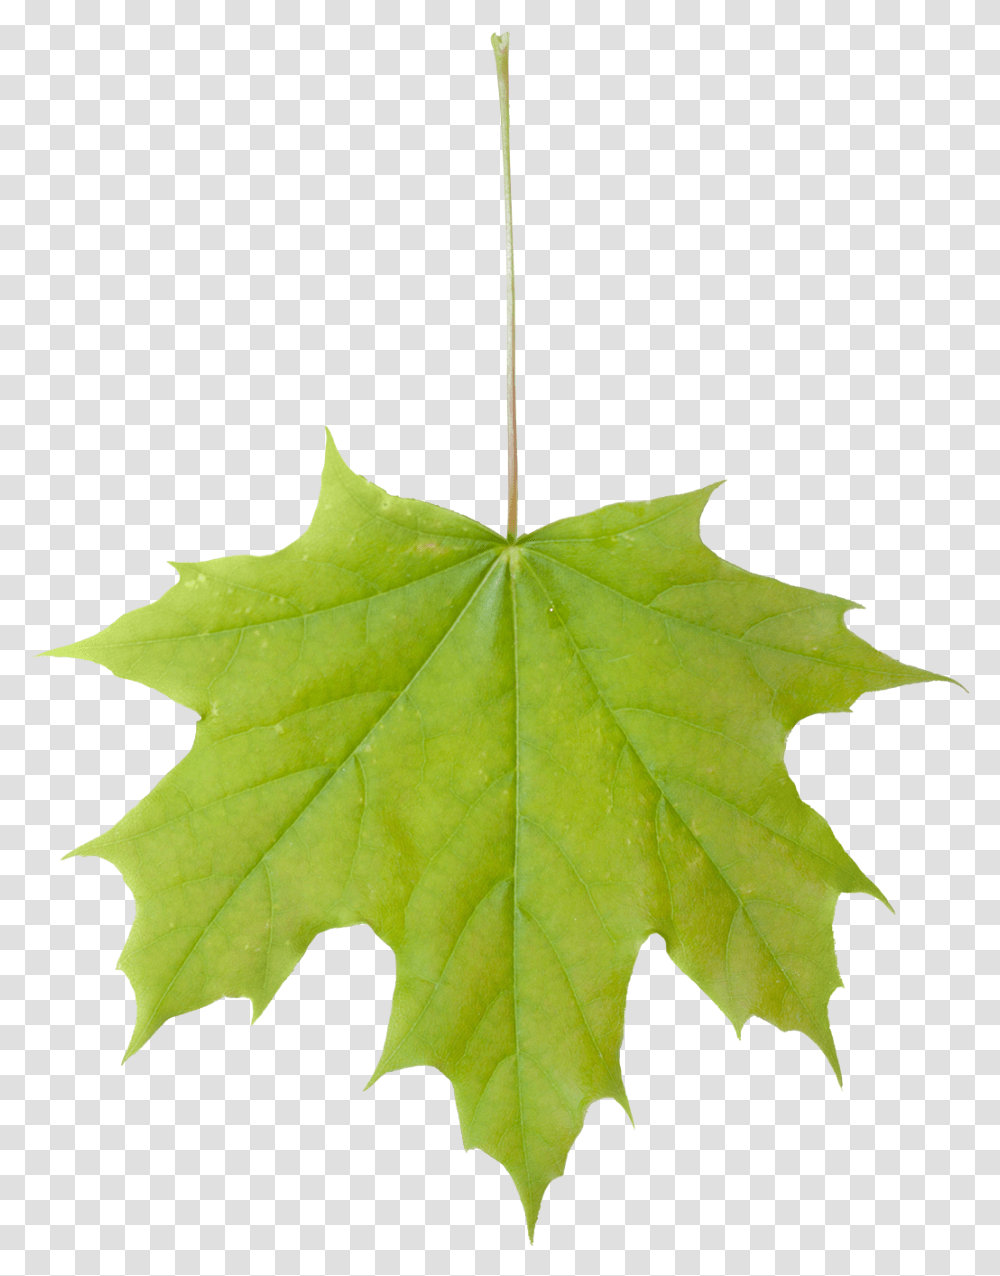 Vegetation Base Texture Pack Leaf, Plant, Tree, Maple Leaf Transparent Png